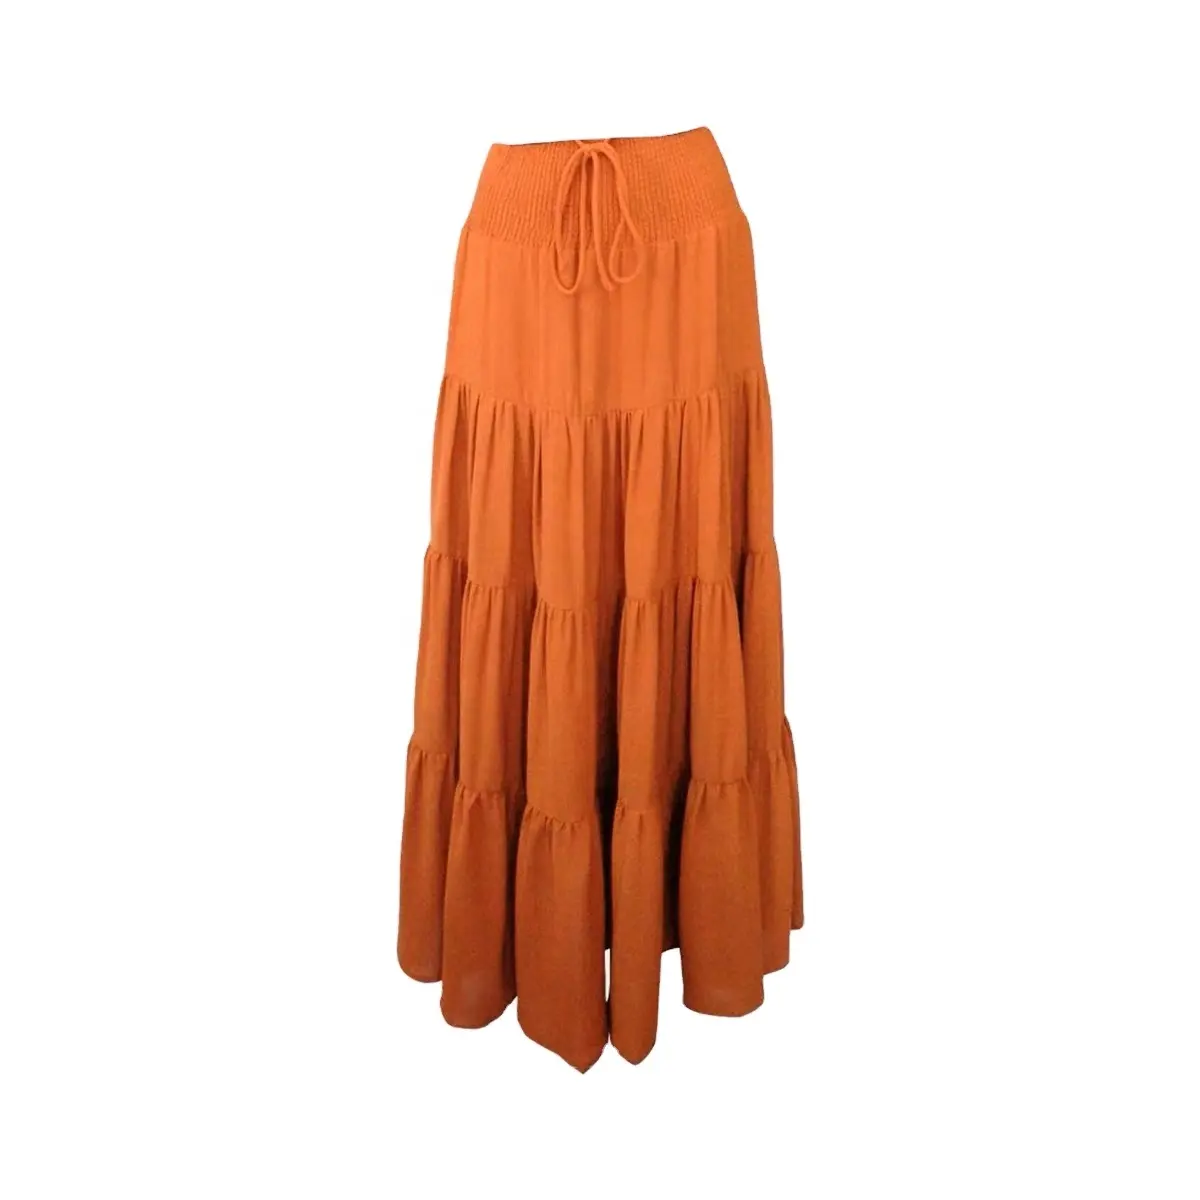 कस्टम टाई लंबी स्कर्ट कैजुअल हाई वेस्ट प्लीटेड स्कर्ट महिलाओं के लिए ट्रेंडिंग सॉलिड रंग मिनी बुना हुआ ऊनी औपचारिक कस्टम रंग